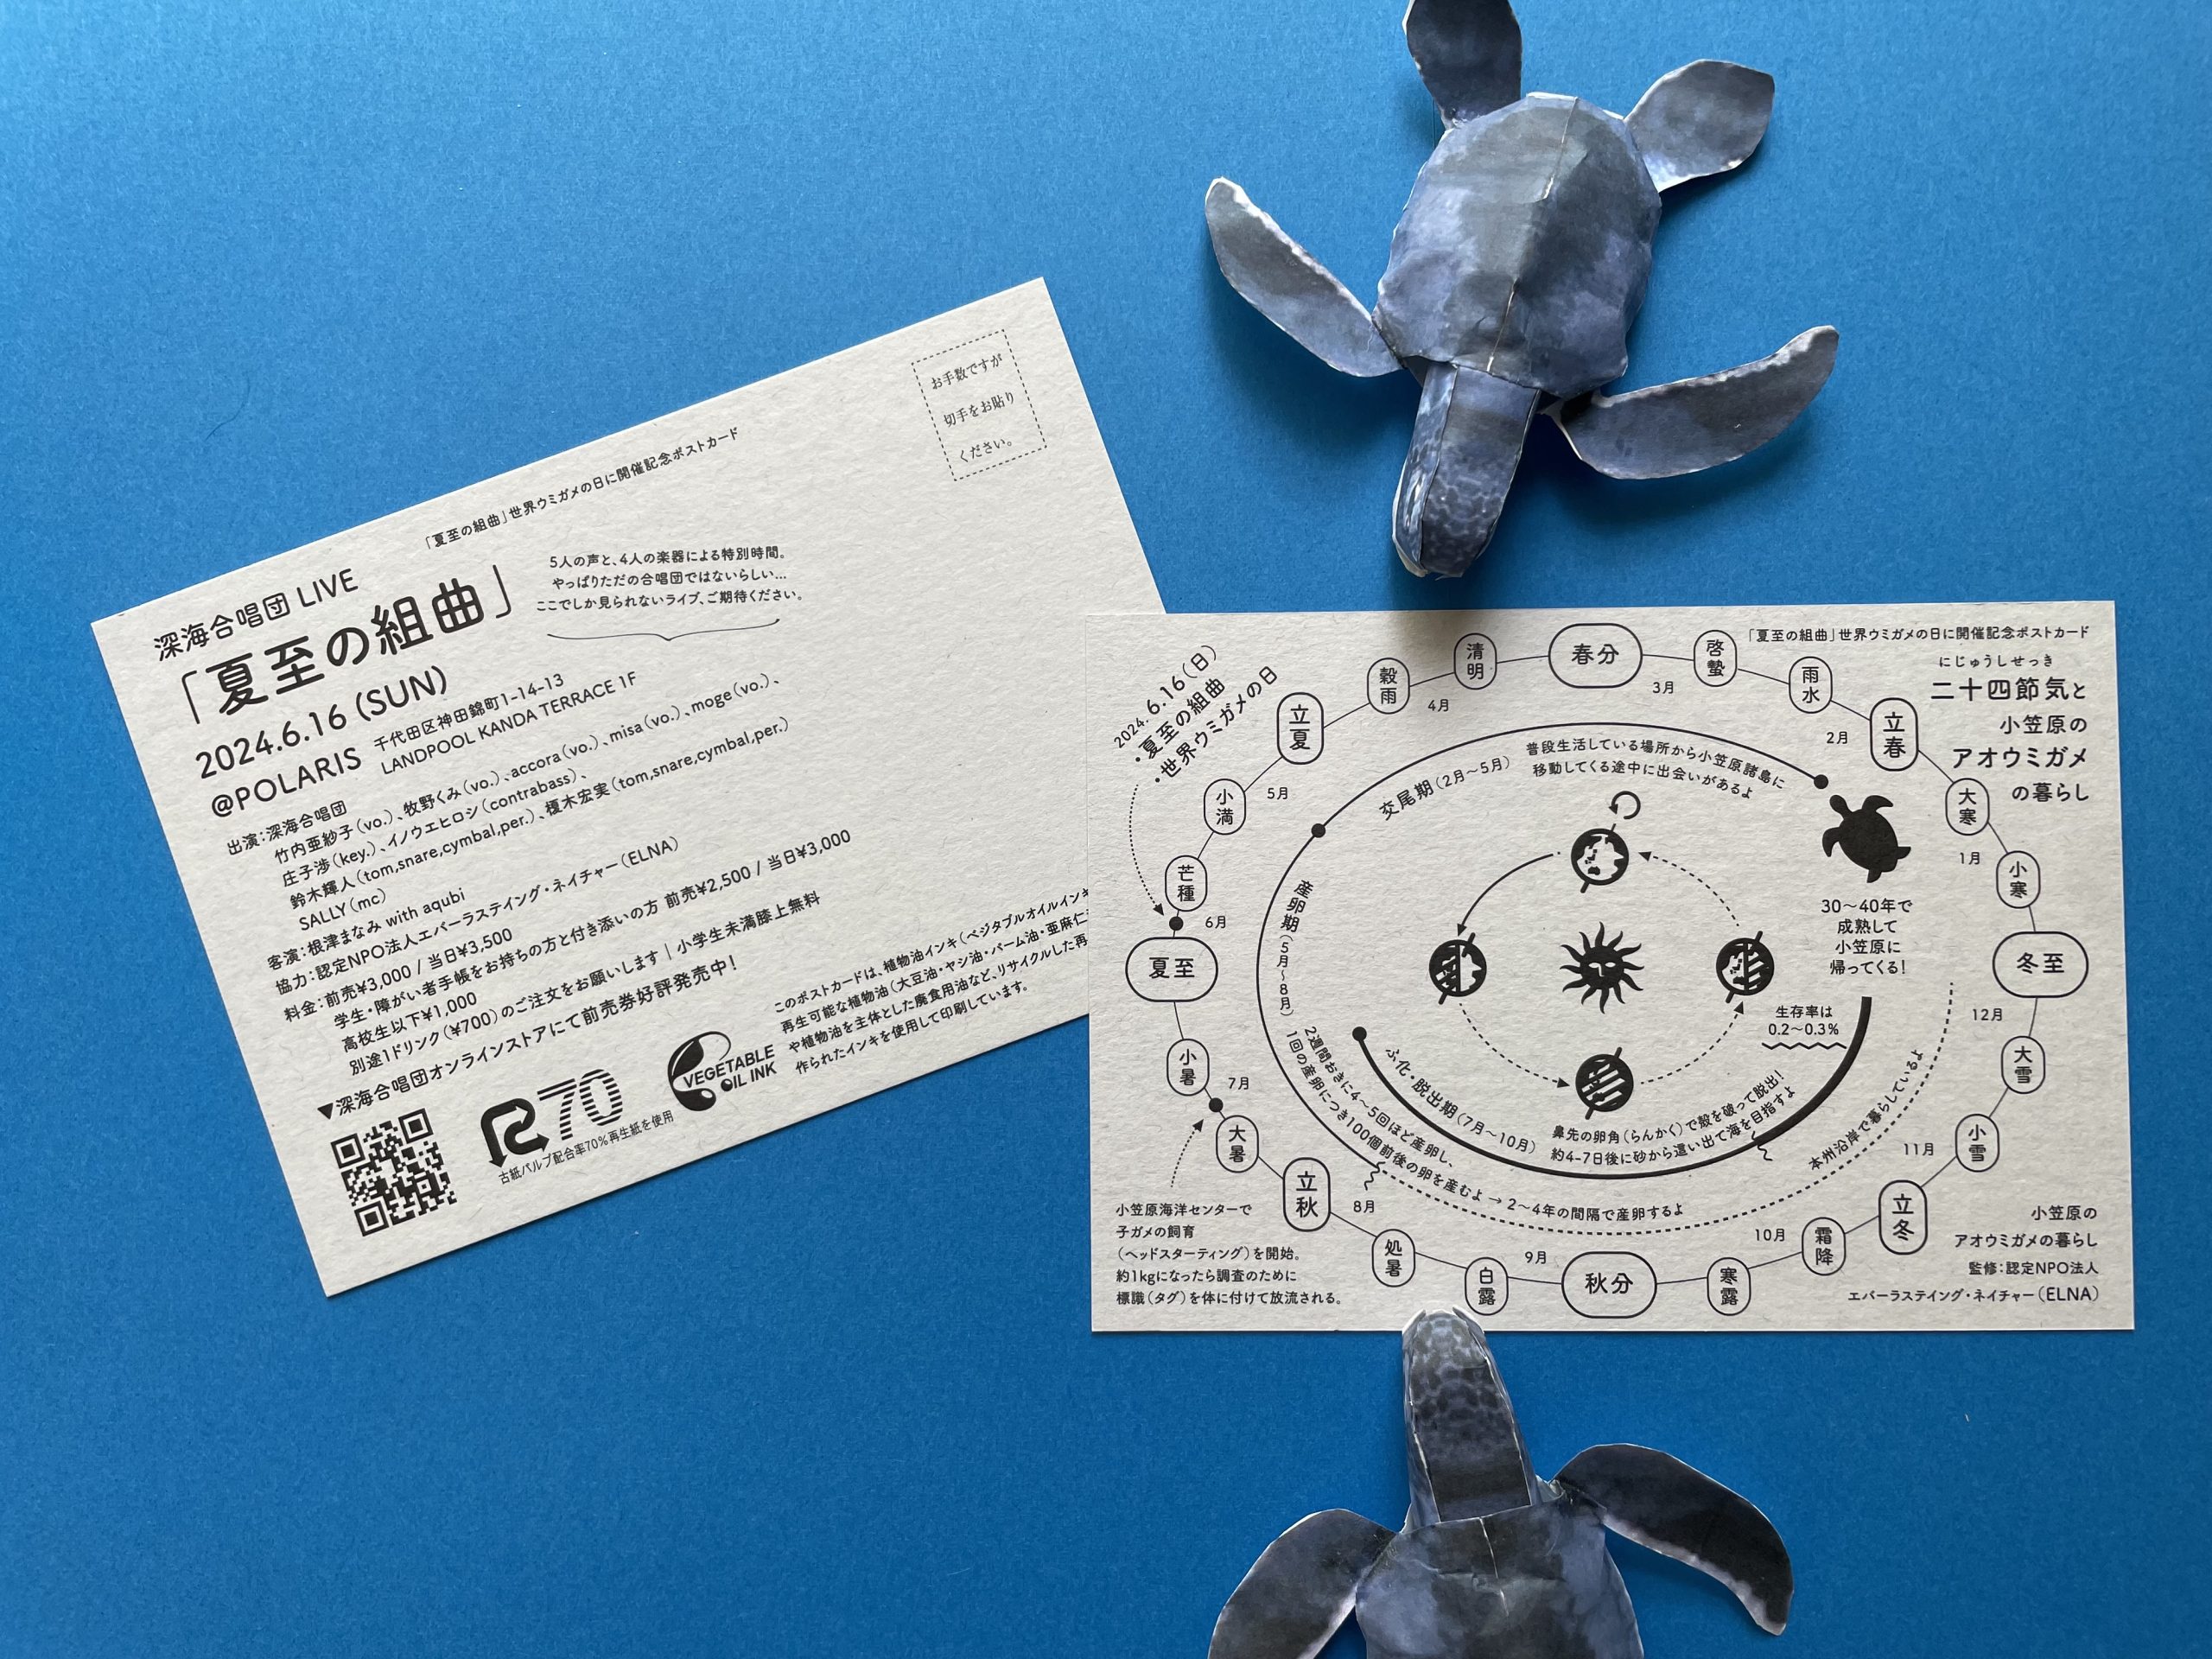 深海合唱団ライブ「夏至の組曲」世界ウミガメの日に開催記念ポストカード